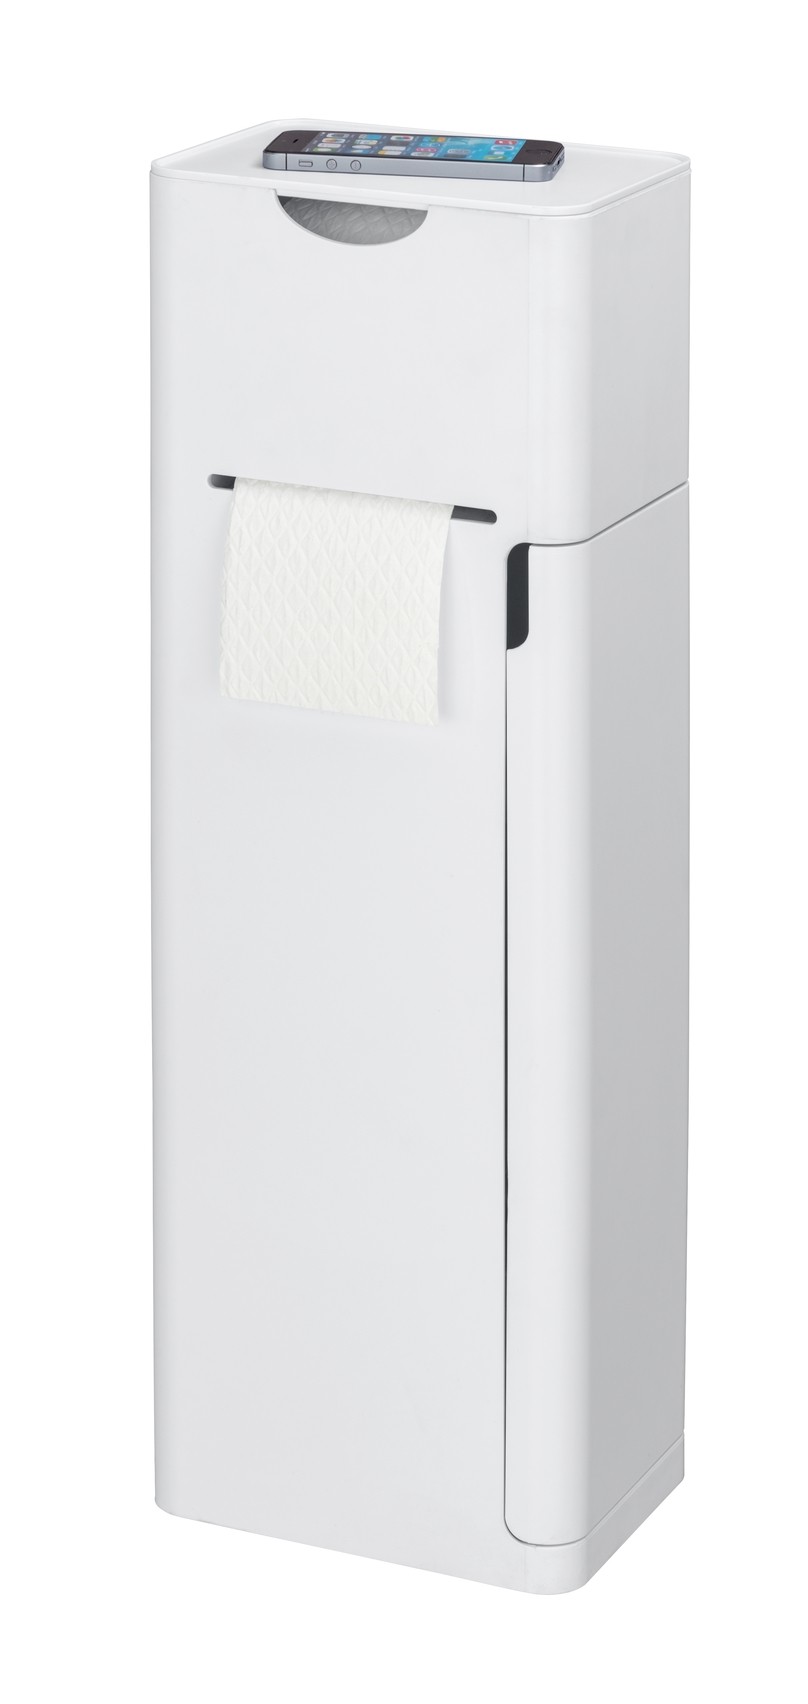 6 in 1 Stand WC-Garnitur Imon Weiß matt, integrierter Toilettenpapierhalter,  WC-Bürstenhalter, Ersatzrollenhalter, Stauraumfächer und Ablage von WENKO  jetzt kaufen bei